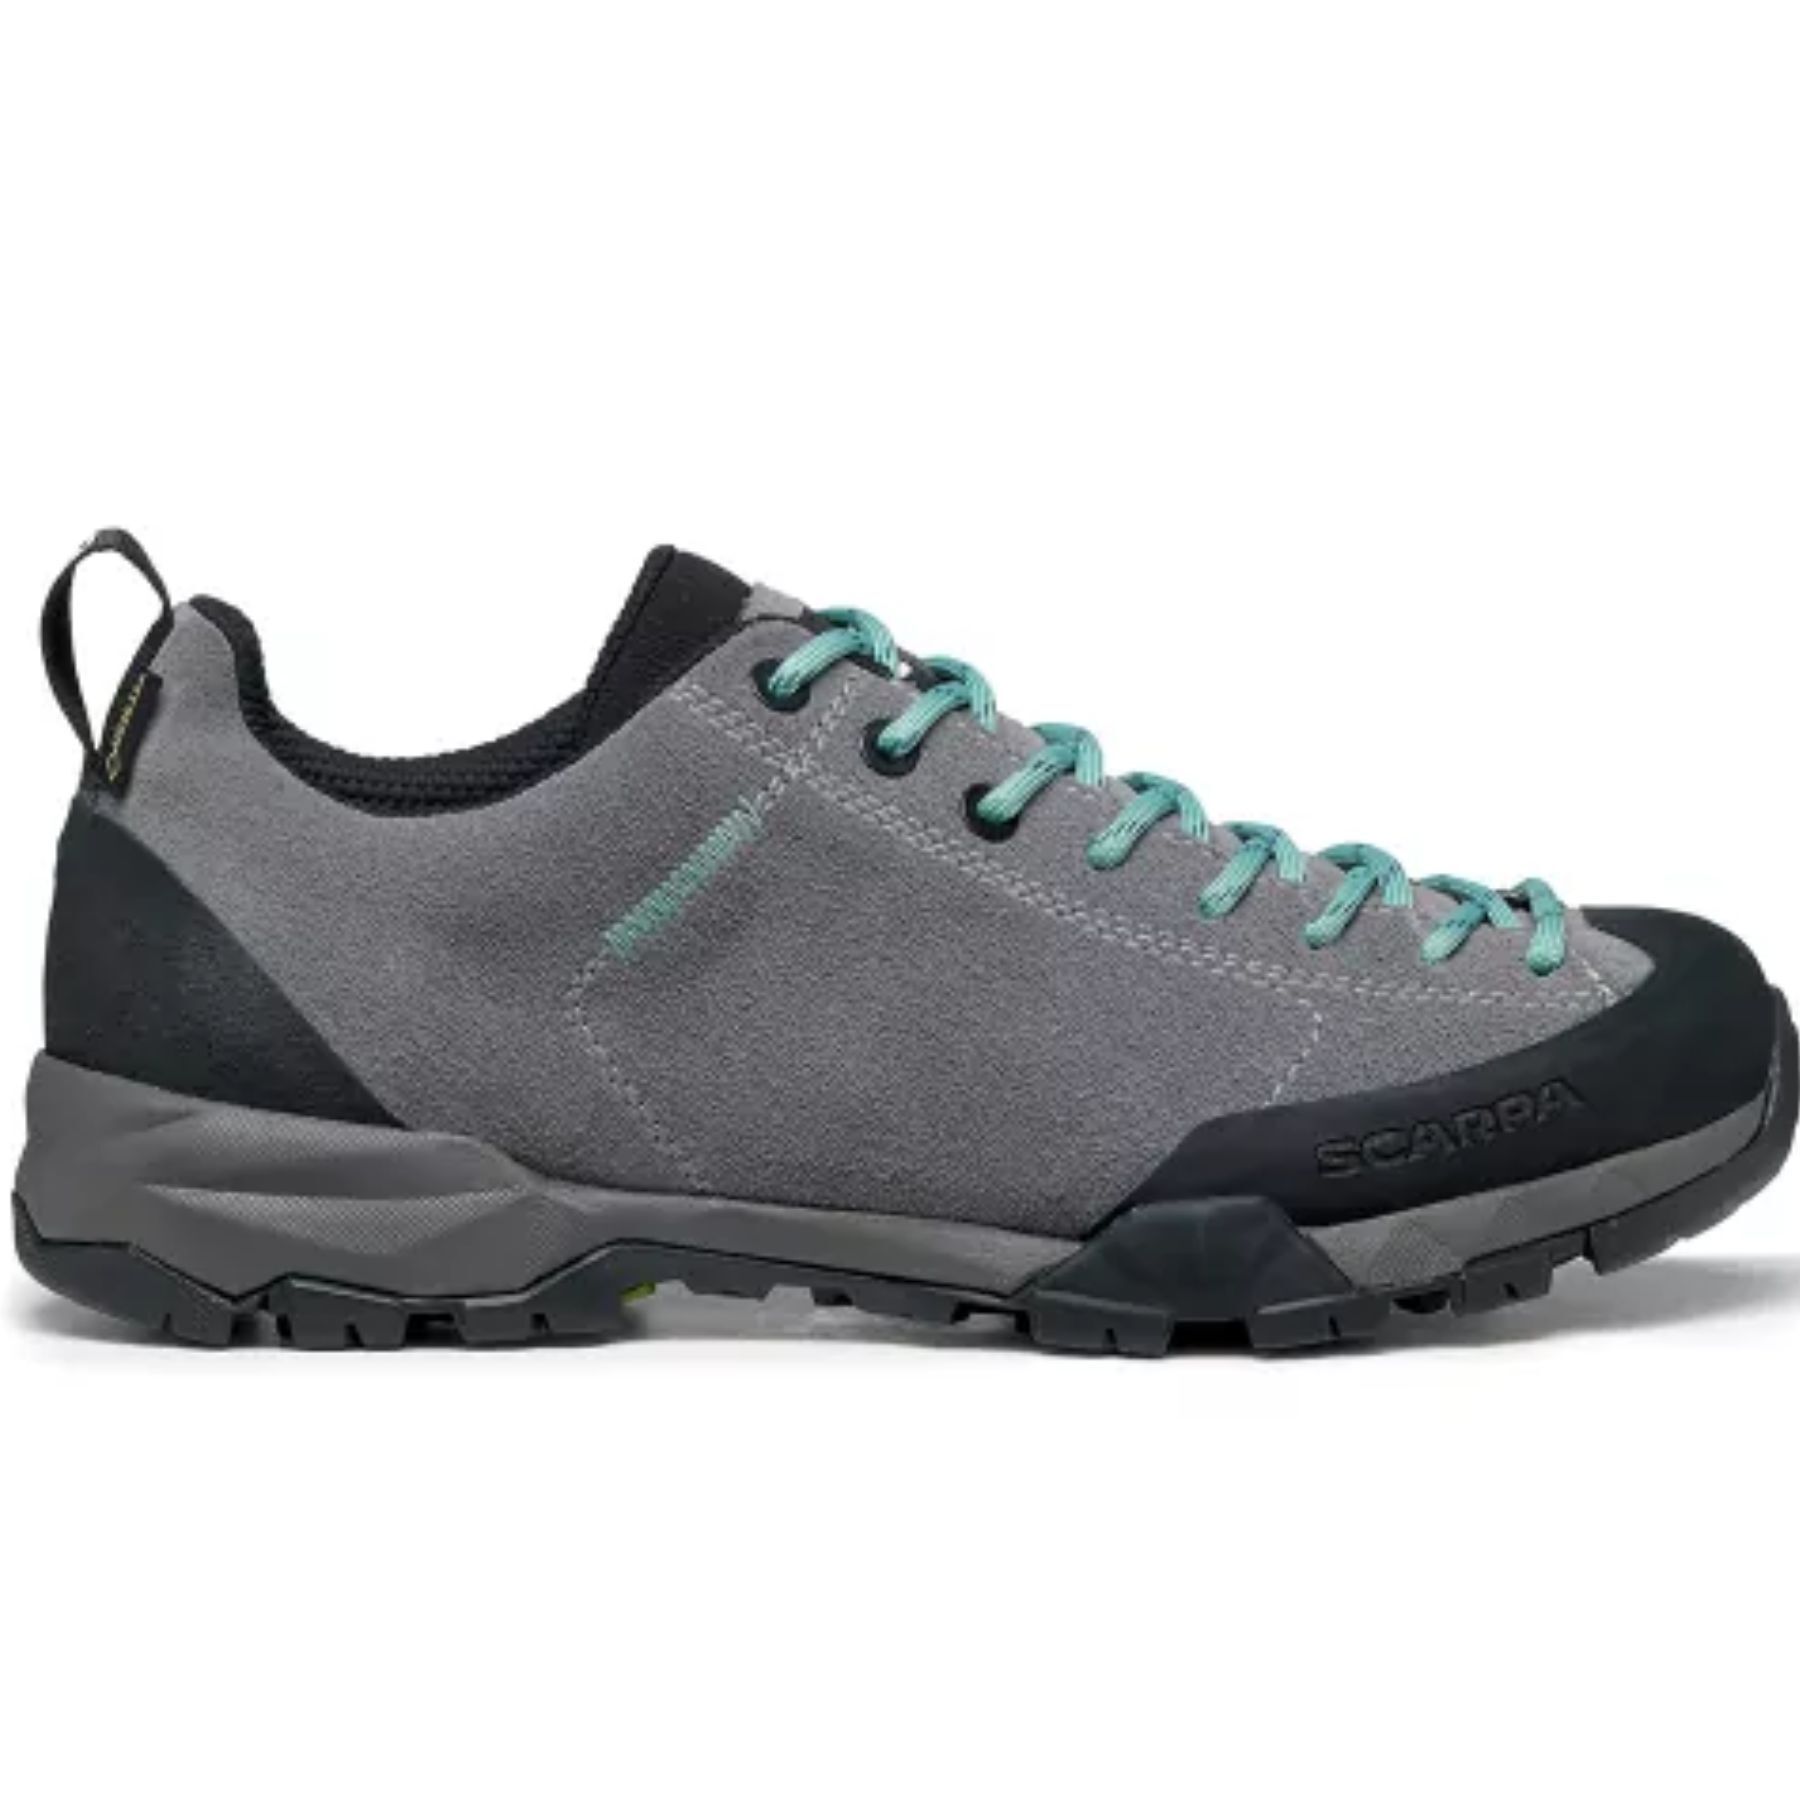 Scarpa Mojito Trail GTX Wmn - Walking shoes - Women's